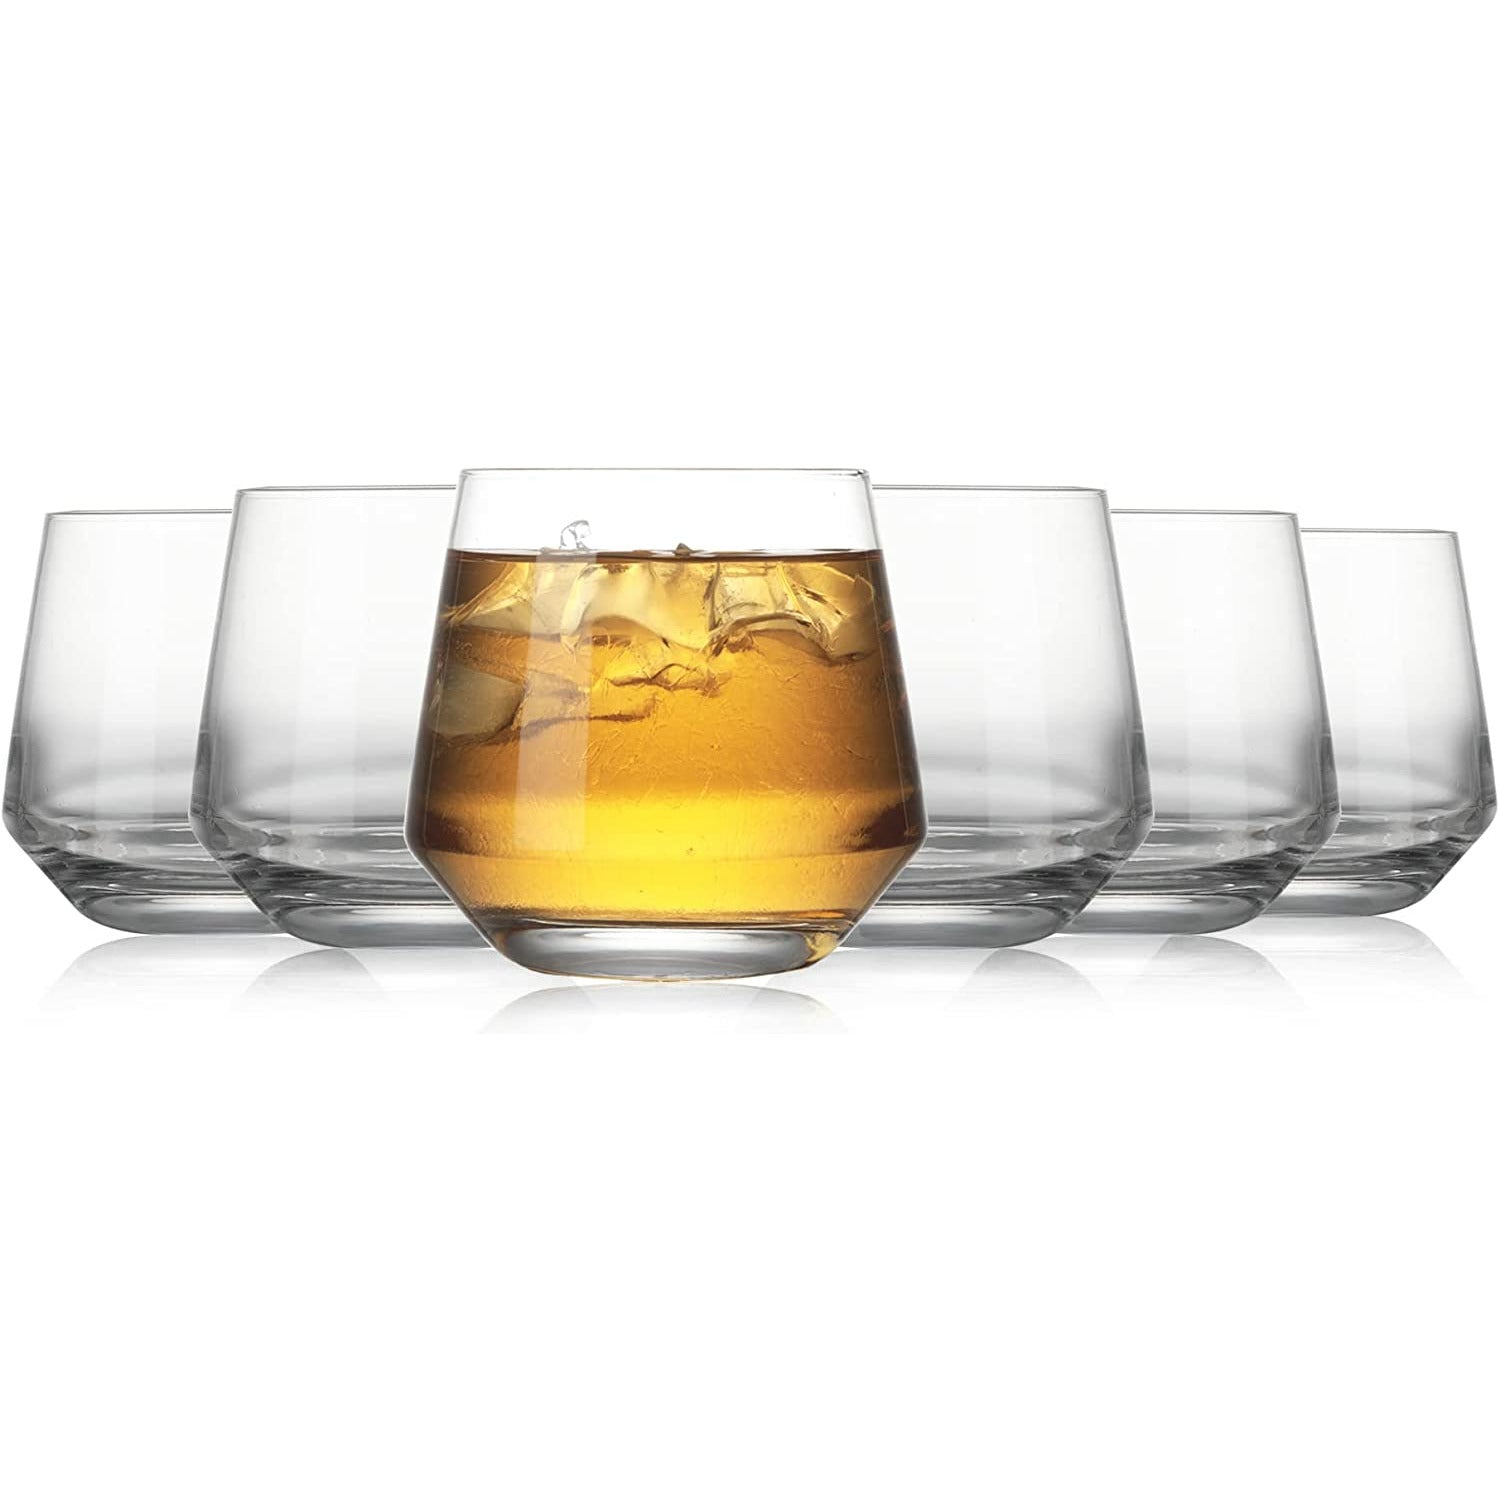 Tapered Rocks Whiskey Glasses (6 Pack)